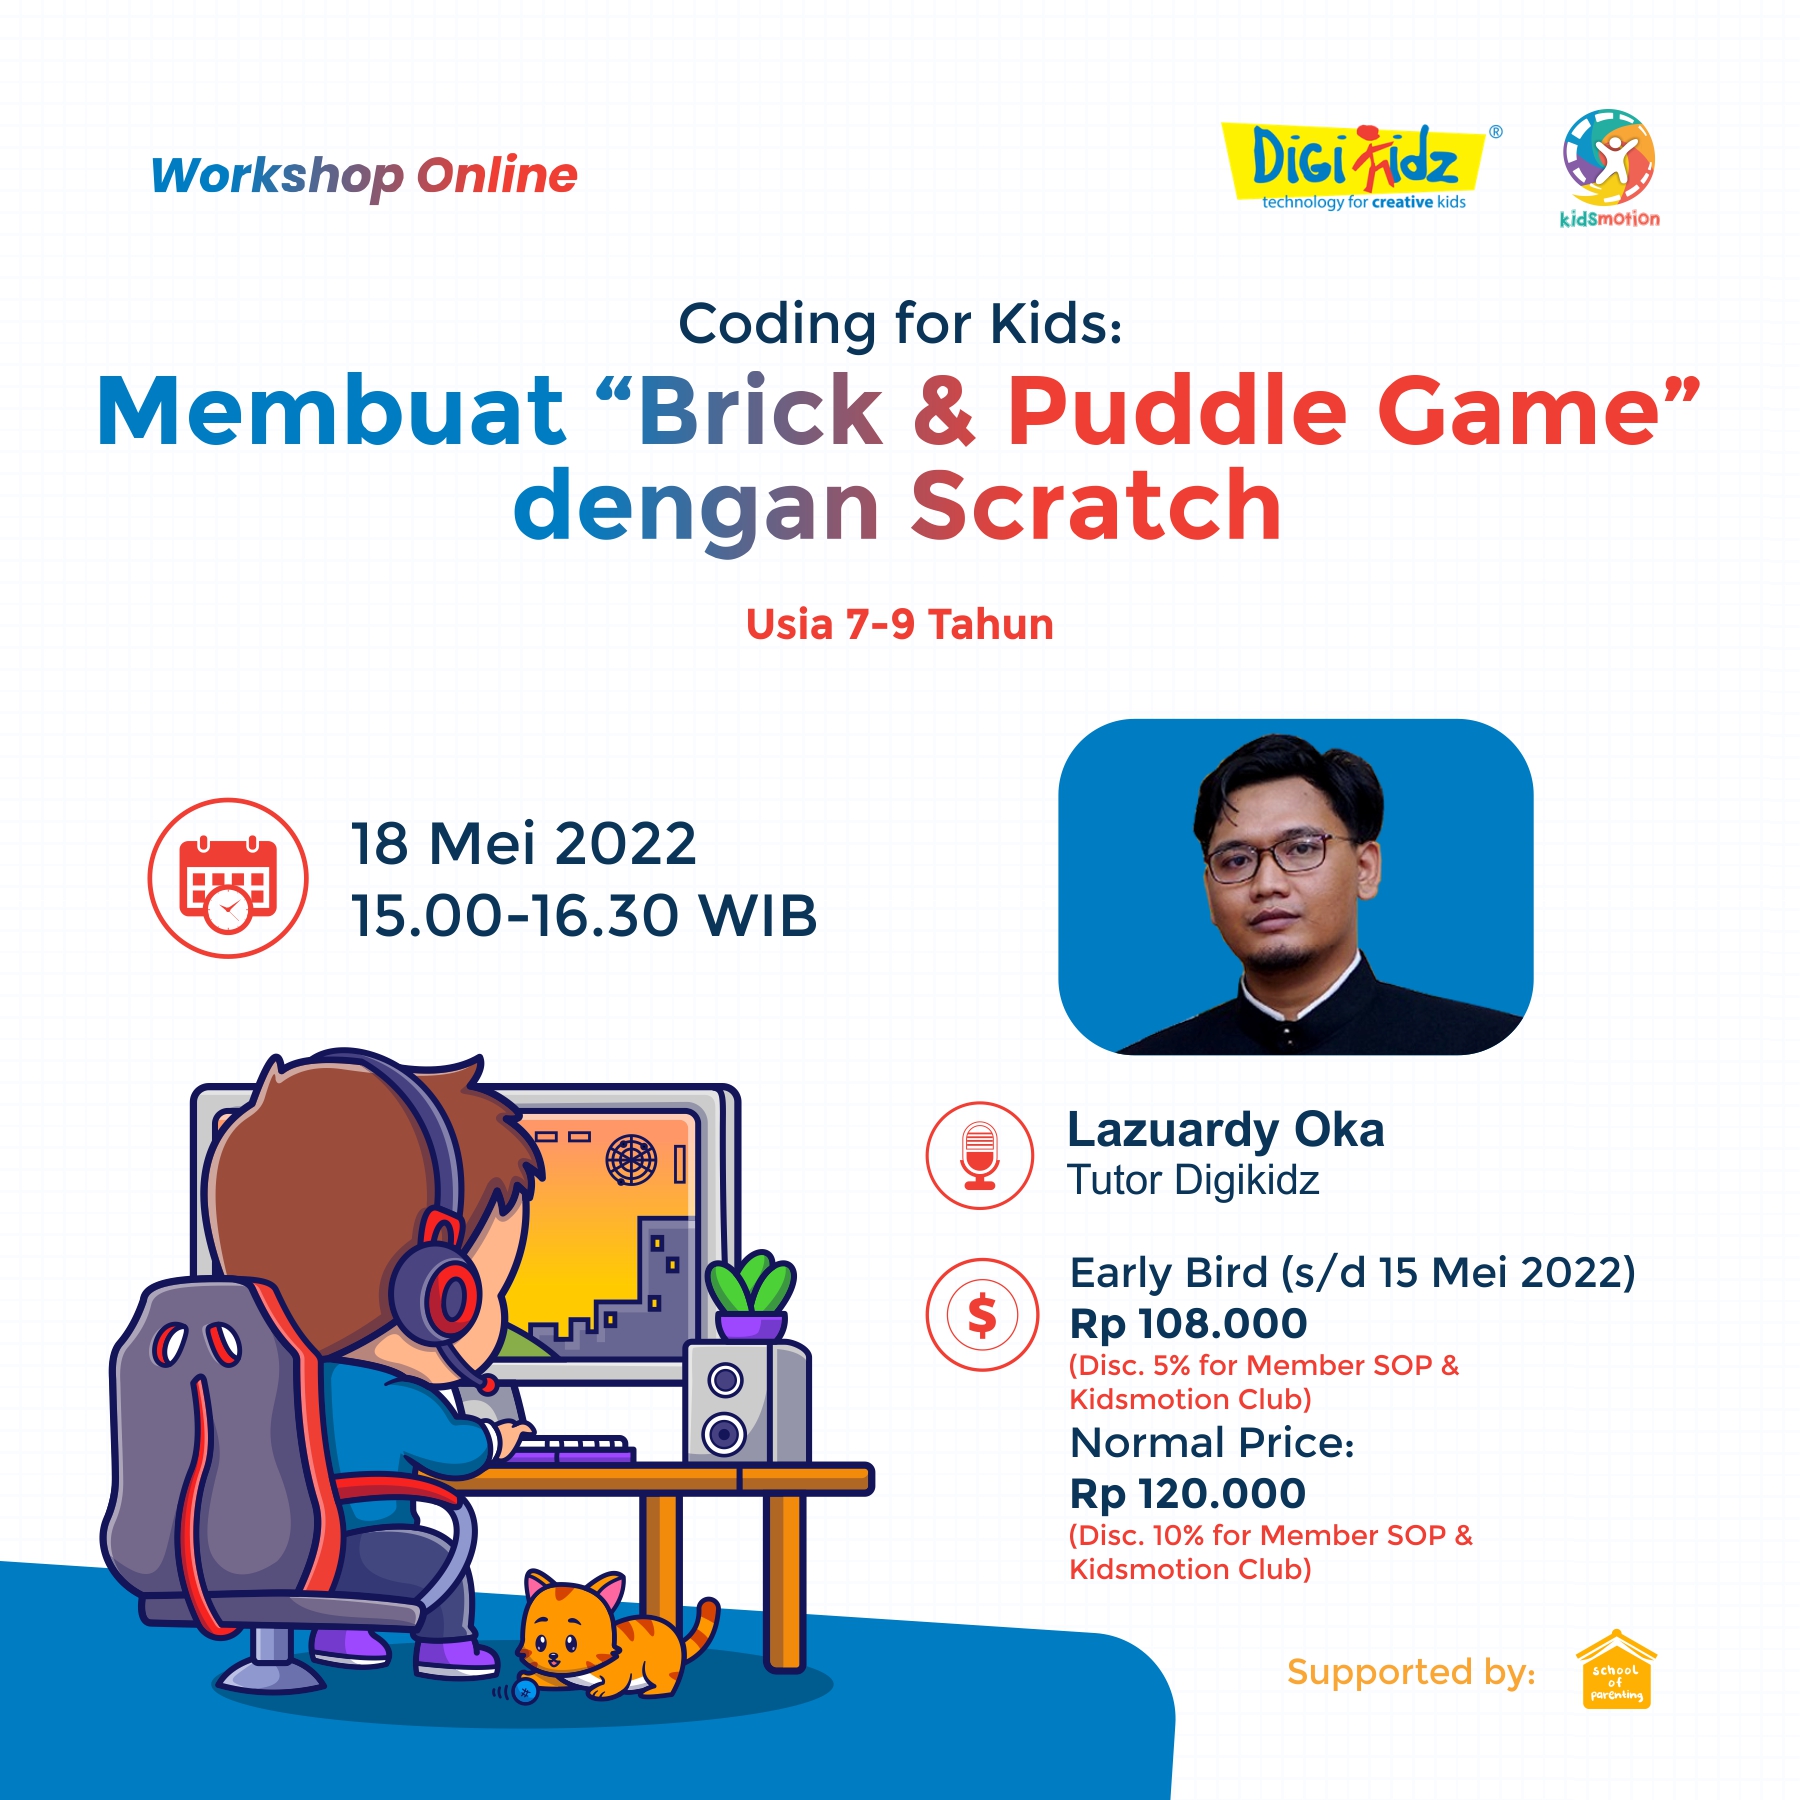 Coding for Kids: Membuat Brick & Puddle Game dengan Scratch